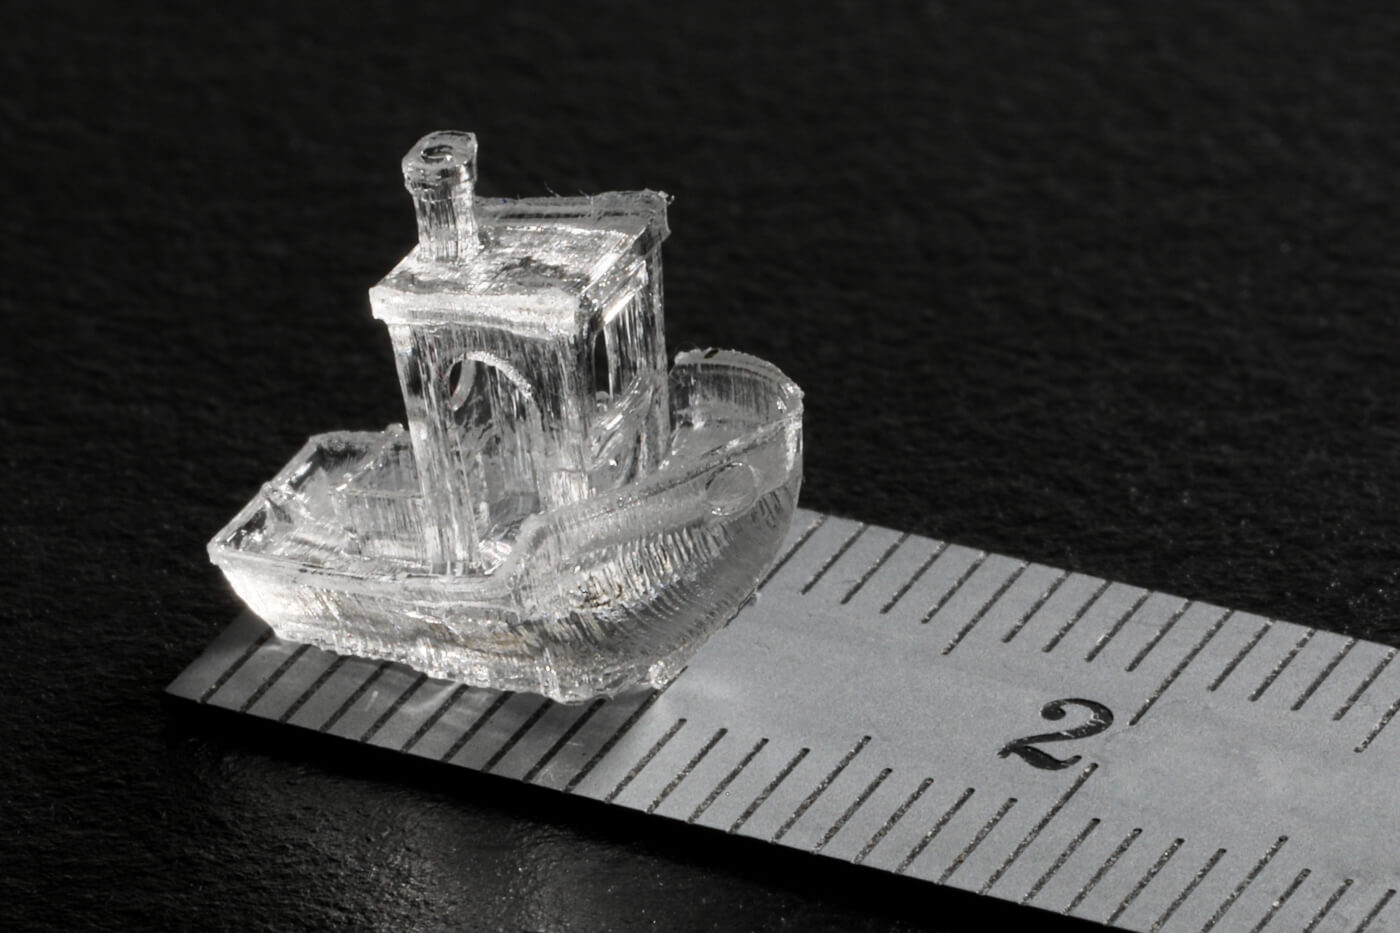 Um método de impressão 3D inovador permite imprimir objetos inteiros em segundos